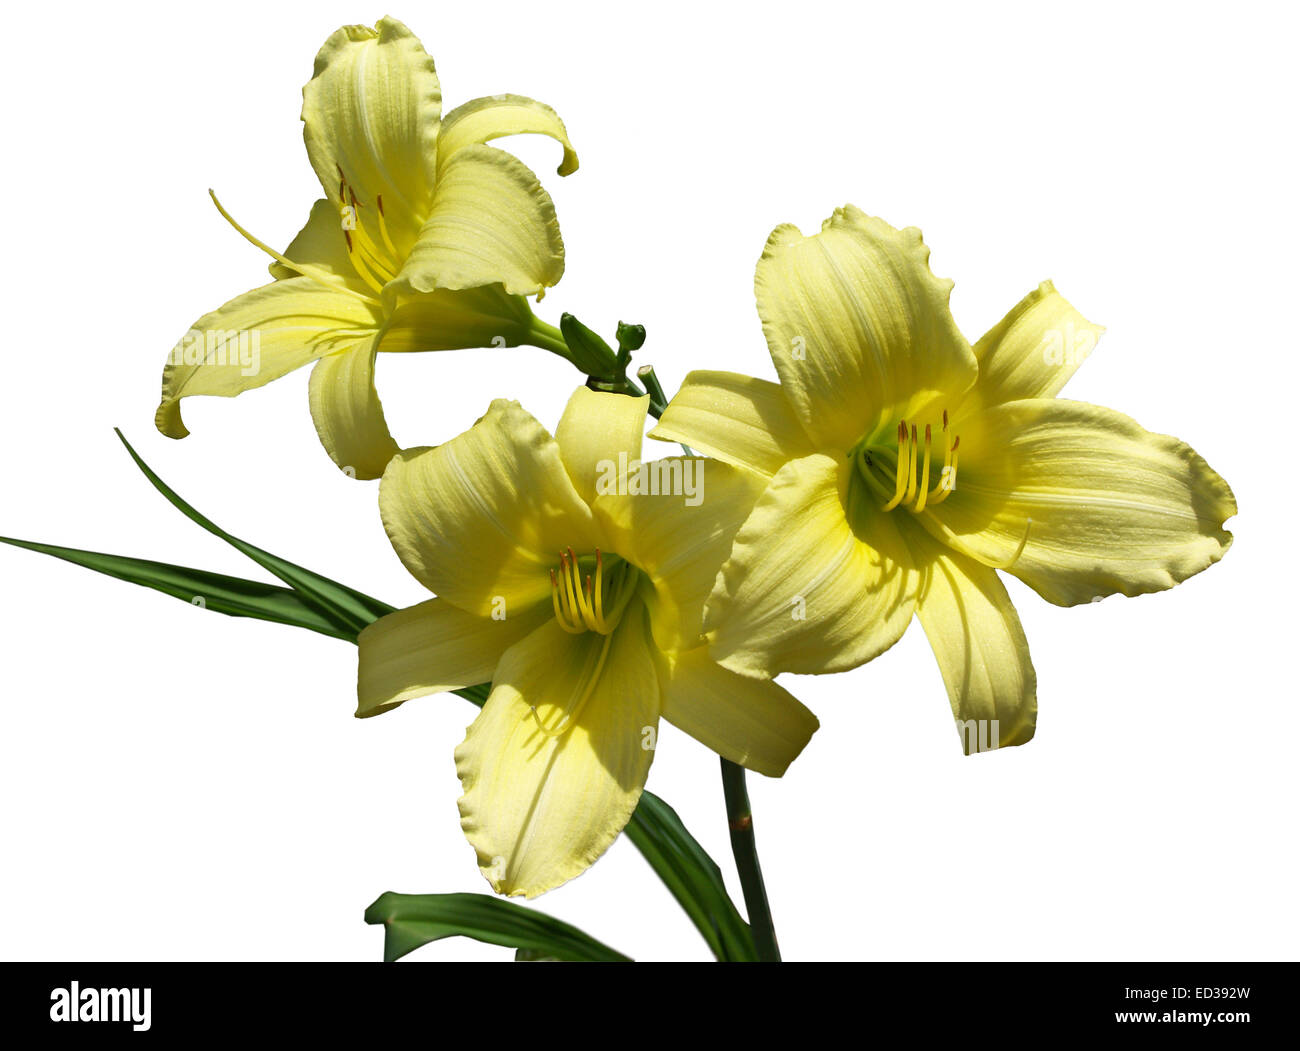 Groupe de trois belles fleurs de l'hémérocalle jaune pâle, 'hybride' de Yellowstone, avec des feuilles vert foncé à l'arrière-plan blanc Banque D'Images